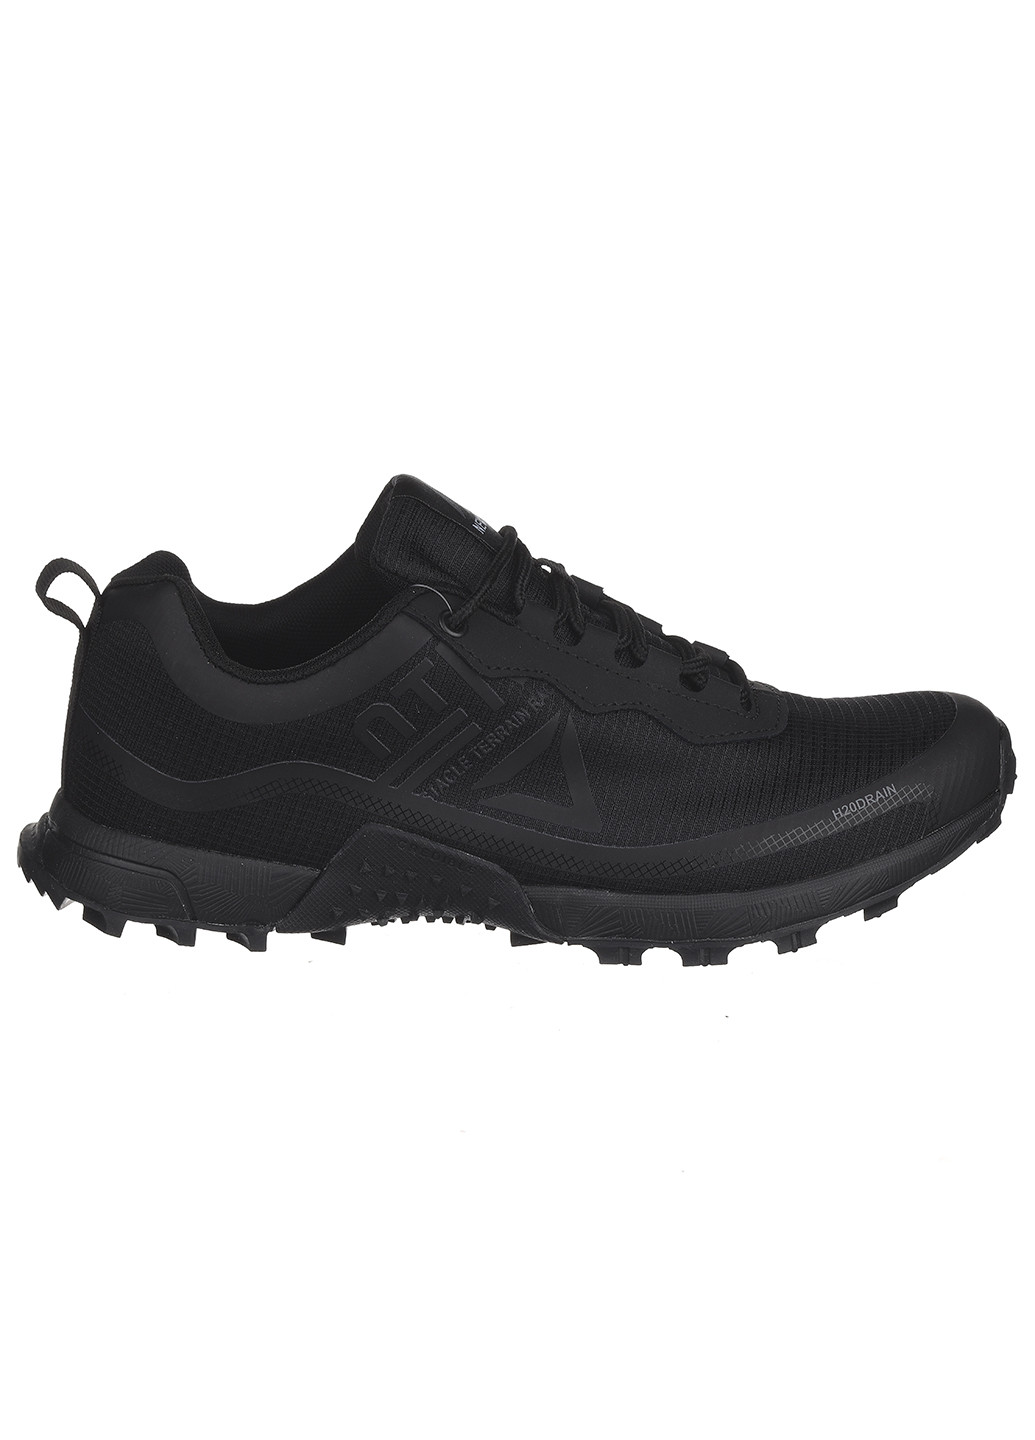 Черные демисезонные мужские кроссовки а5268-2 Yike